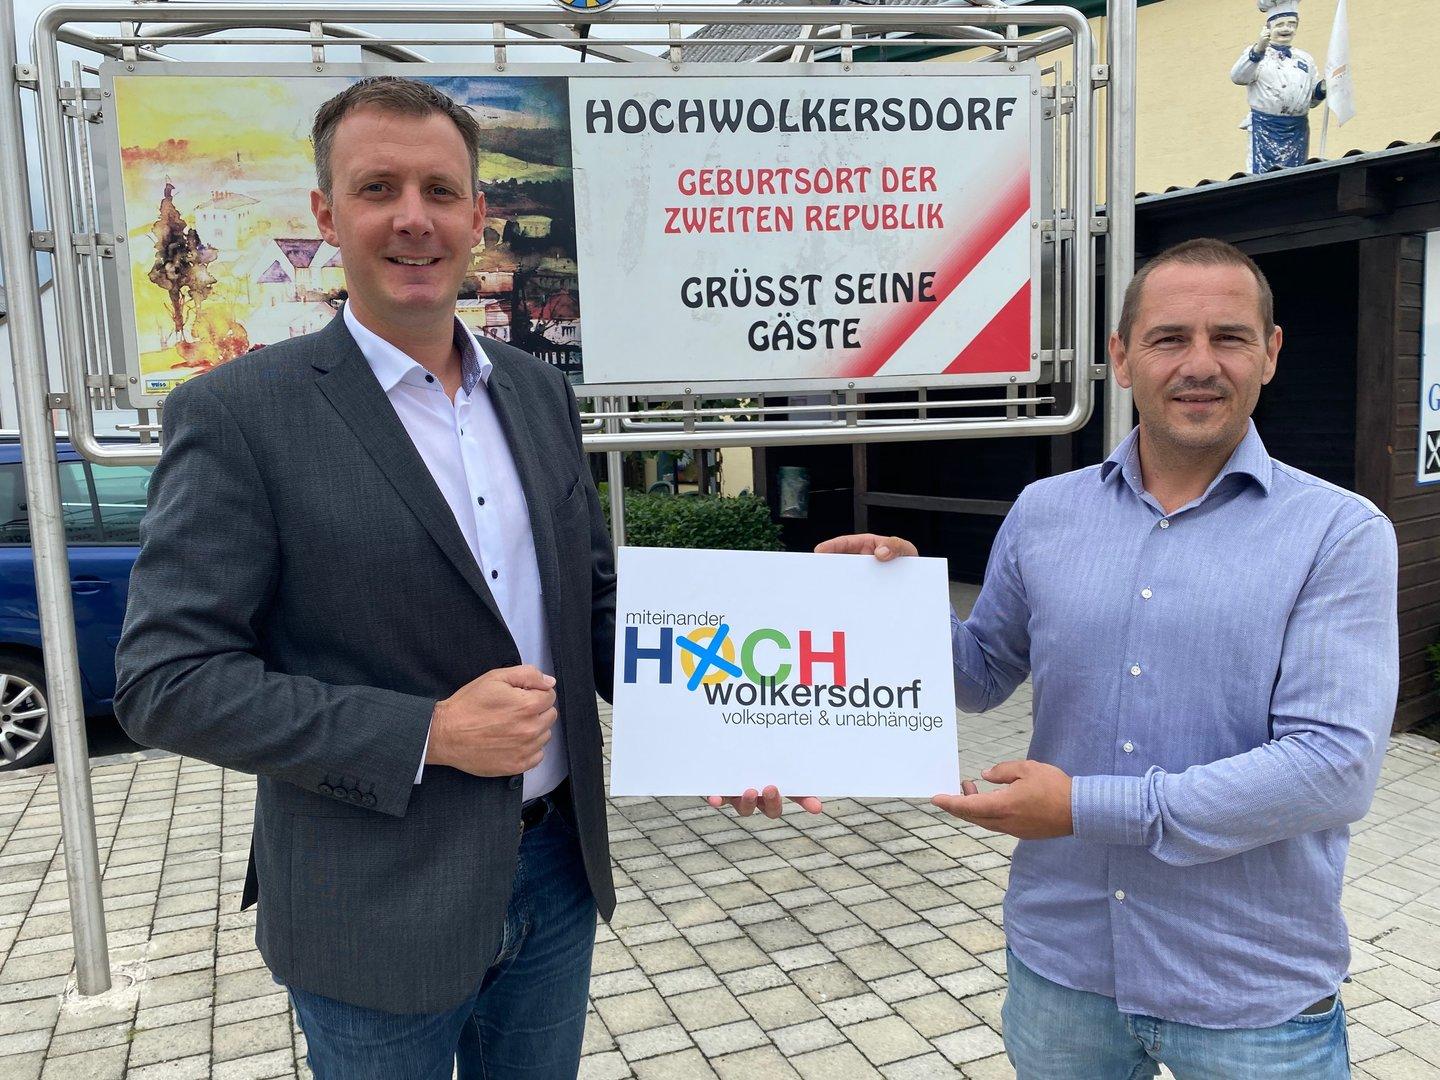 Neuwahl: ÖVP verärgert Zweitwohnsitzer in Hochwolkersdorf